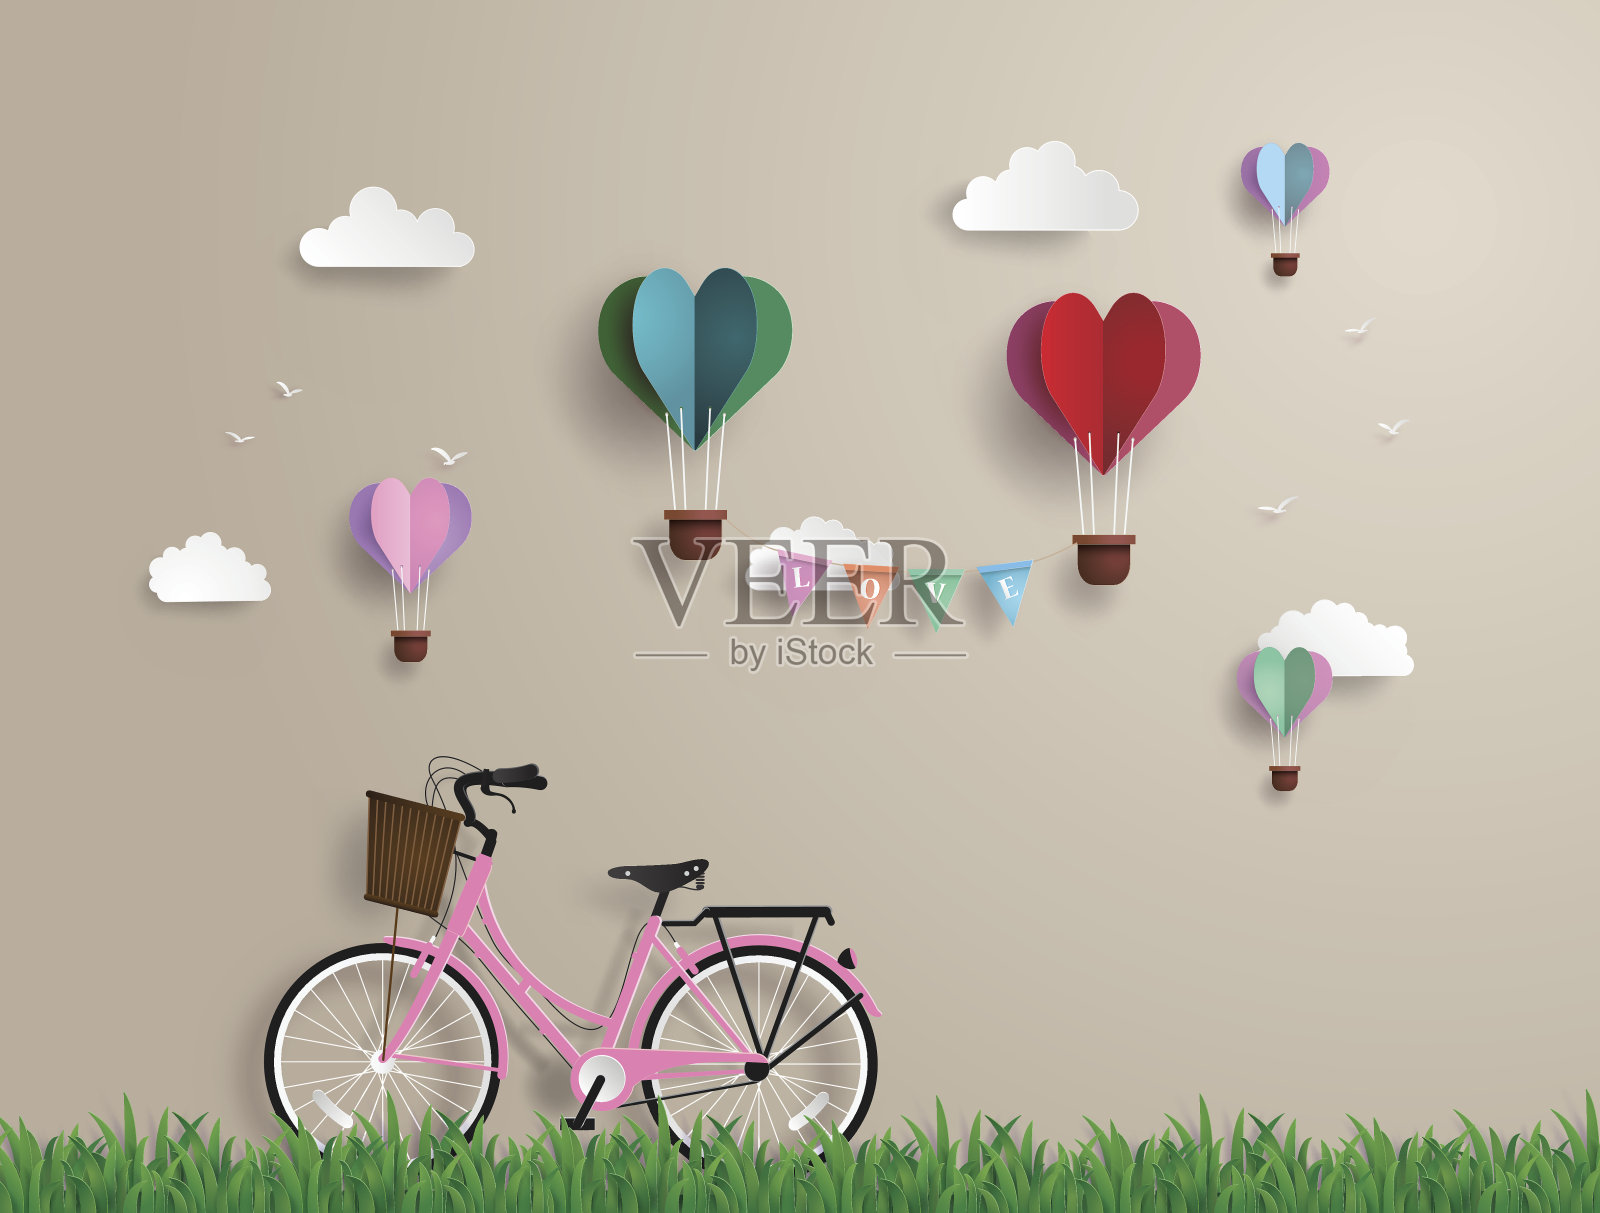 草地上停着粉红色的自行车插画图片素材